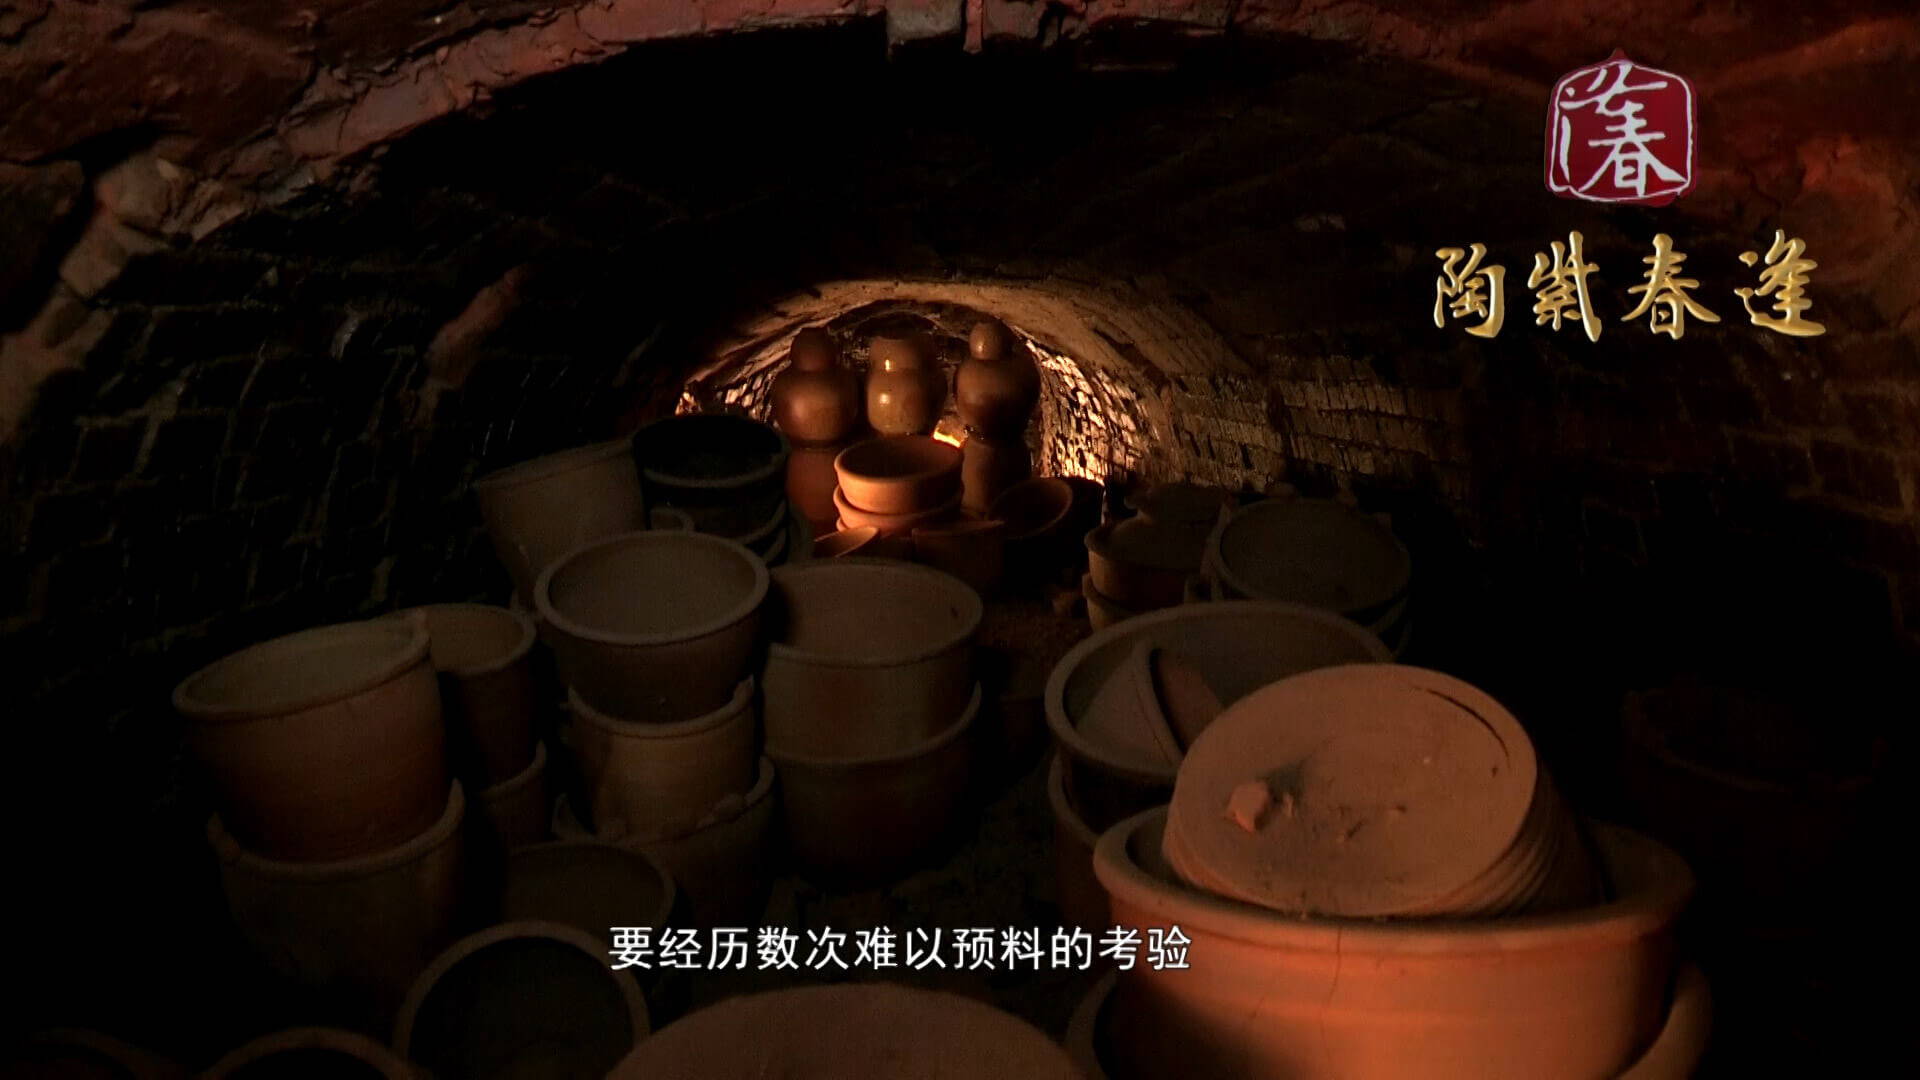 Creating Jian Shui Pottery - Fire in Kiln